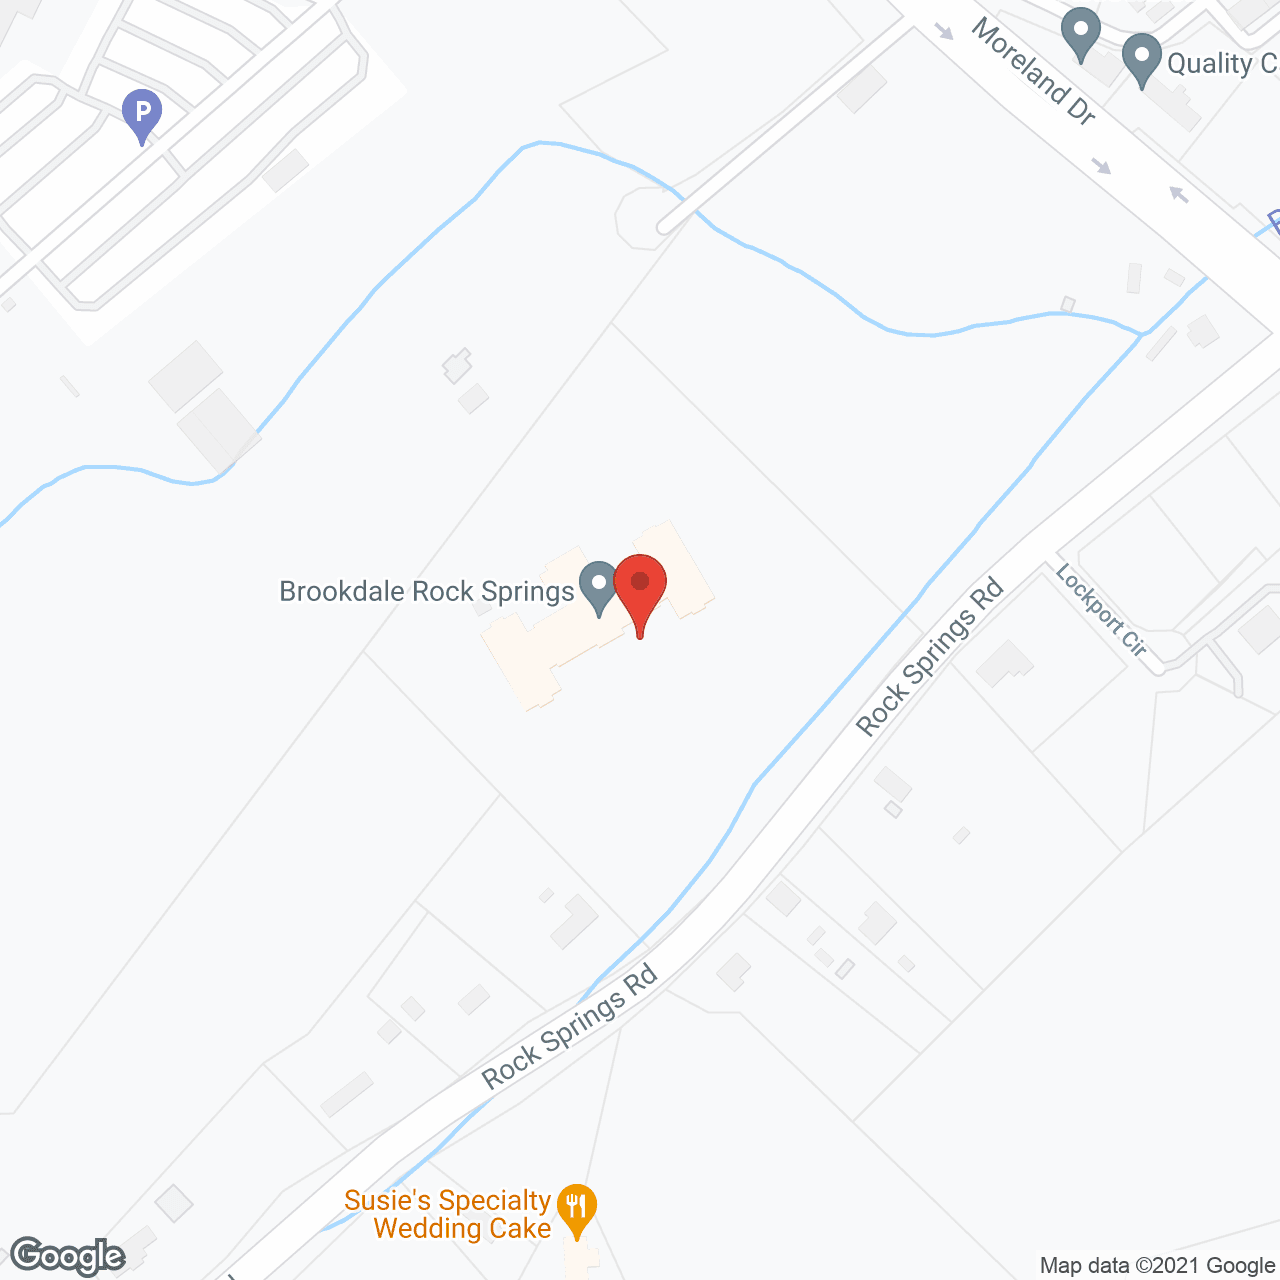 Brookdale Rock Springs in google map